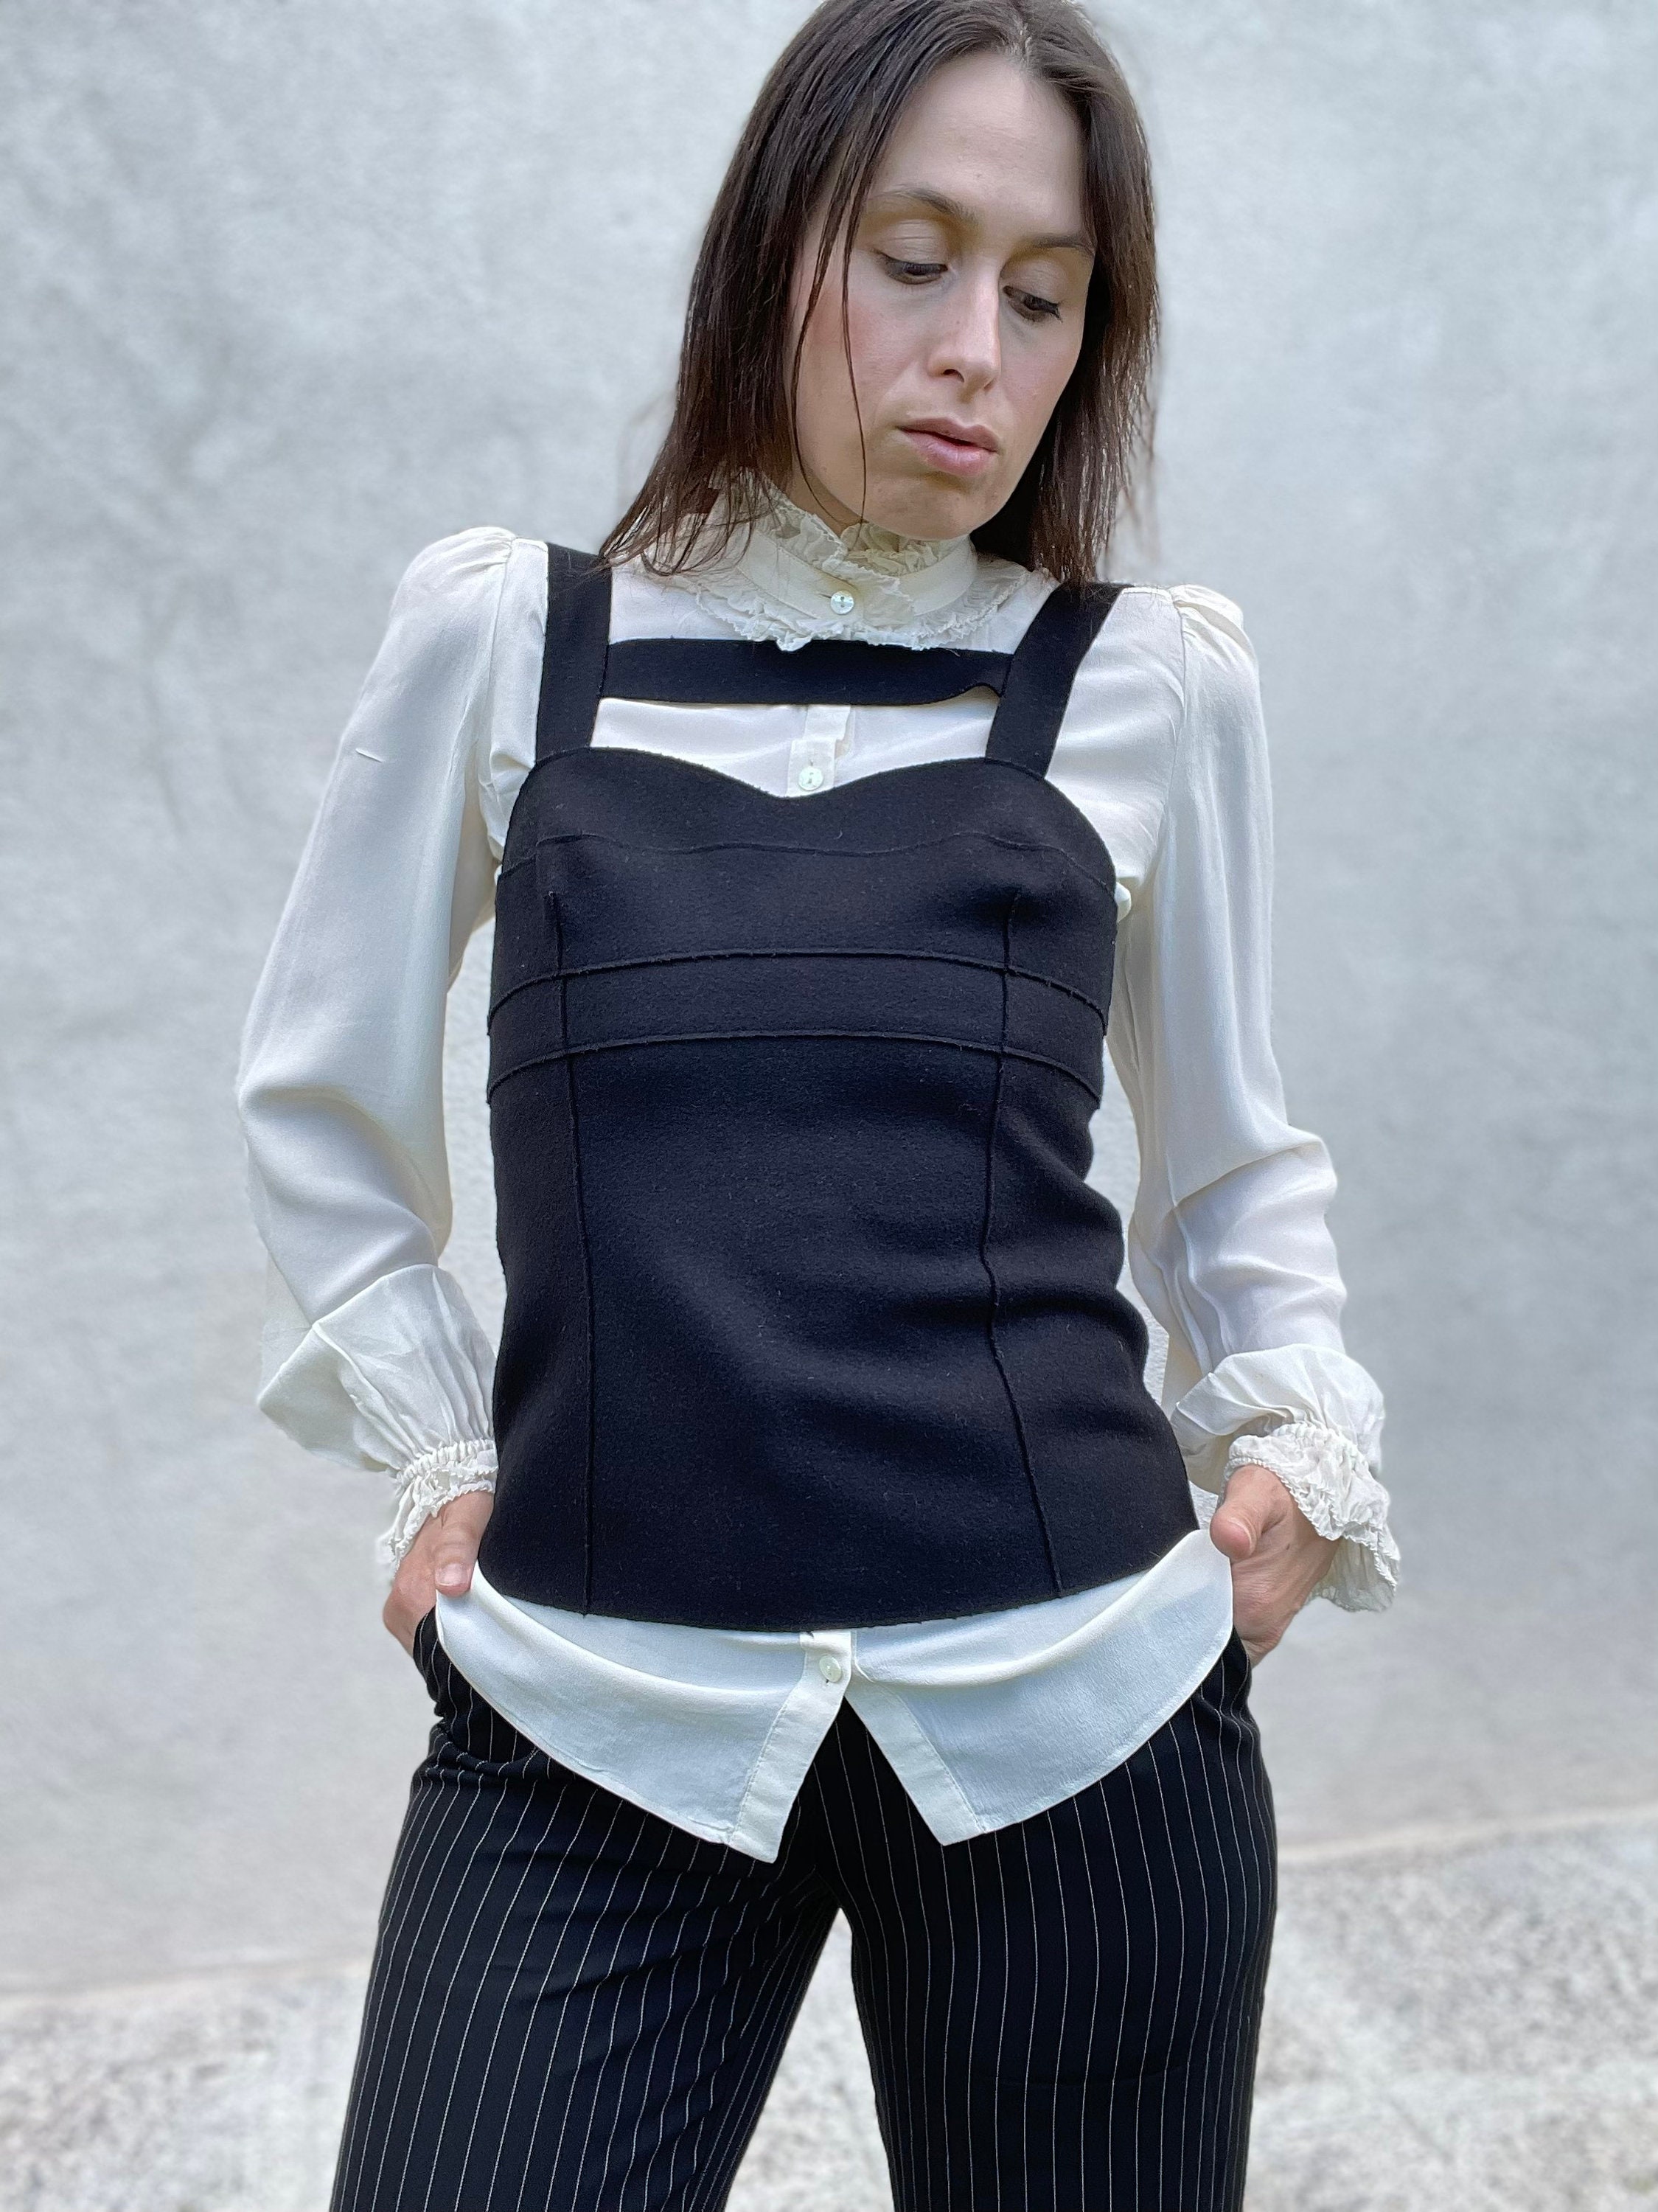 Miu Miu by Miuccia Prada FW 2006 Black Wool Bustier Corset - Etsy